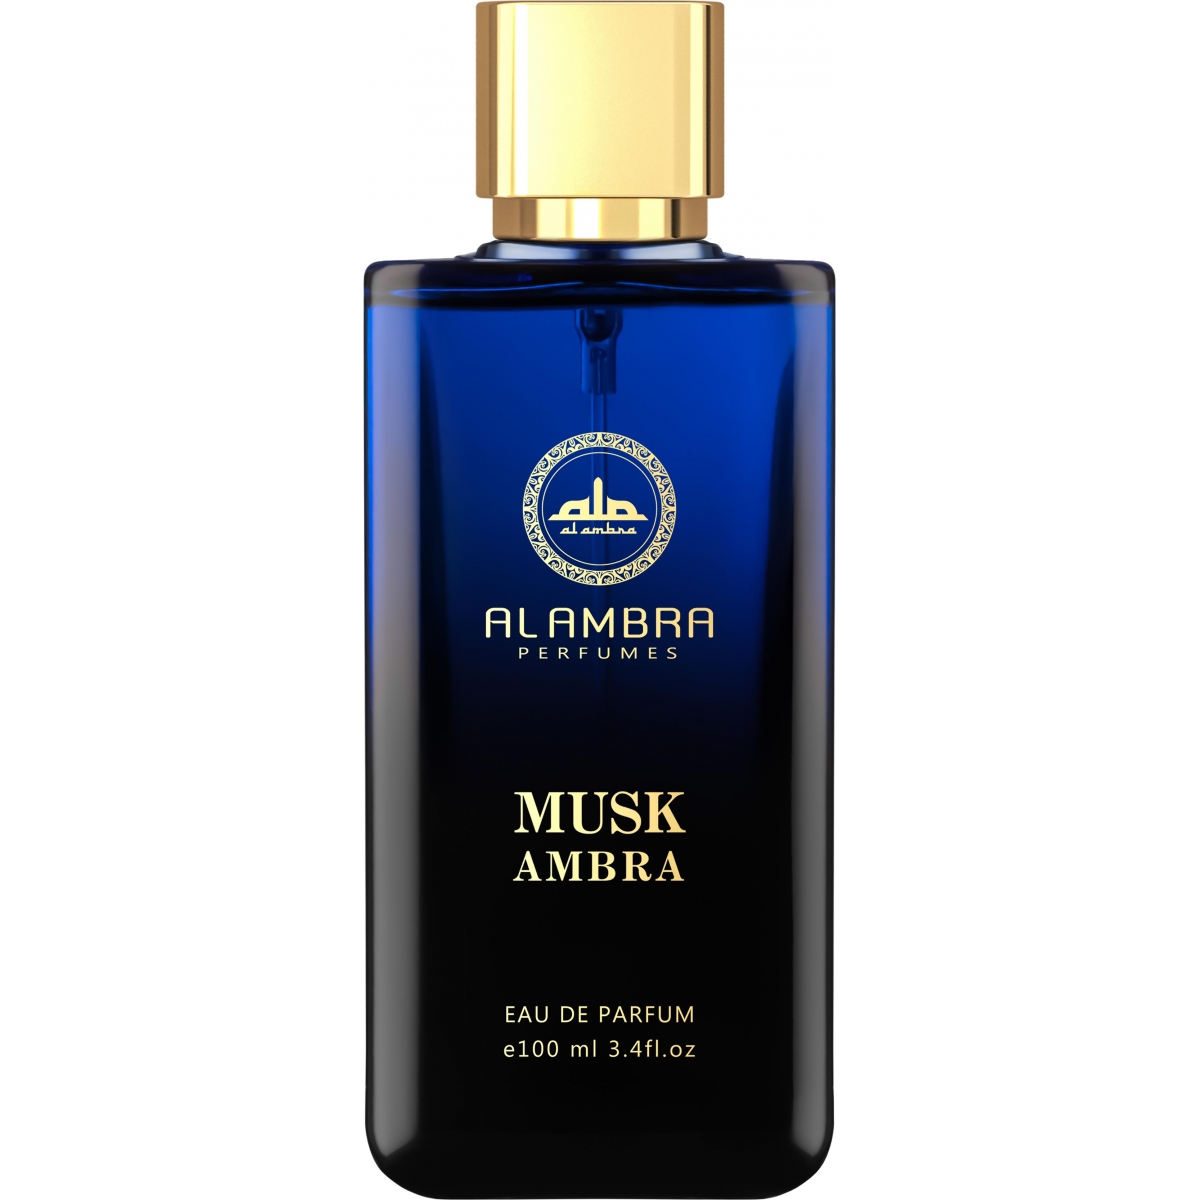 Musk Ambra Al Ambra Perfumes Perfumes, Profumi Unisex, Arada Perfumes